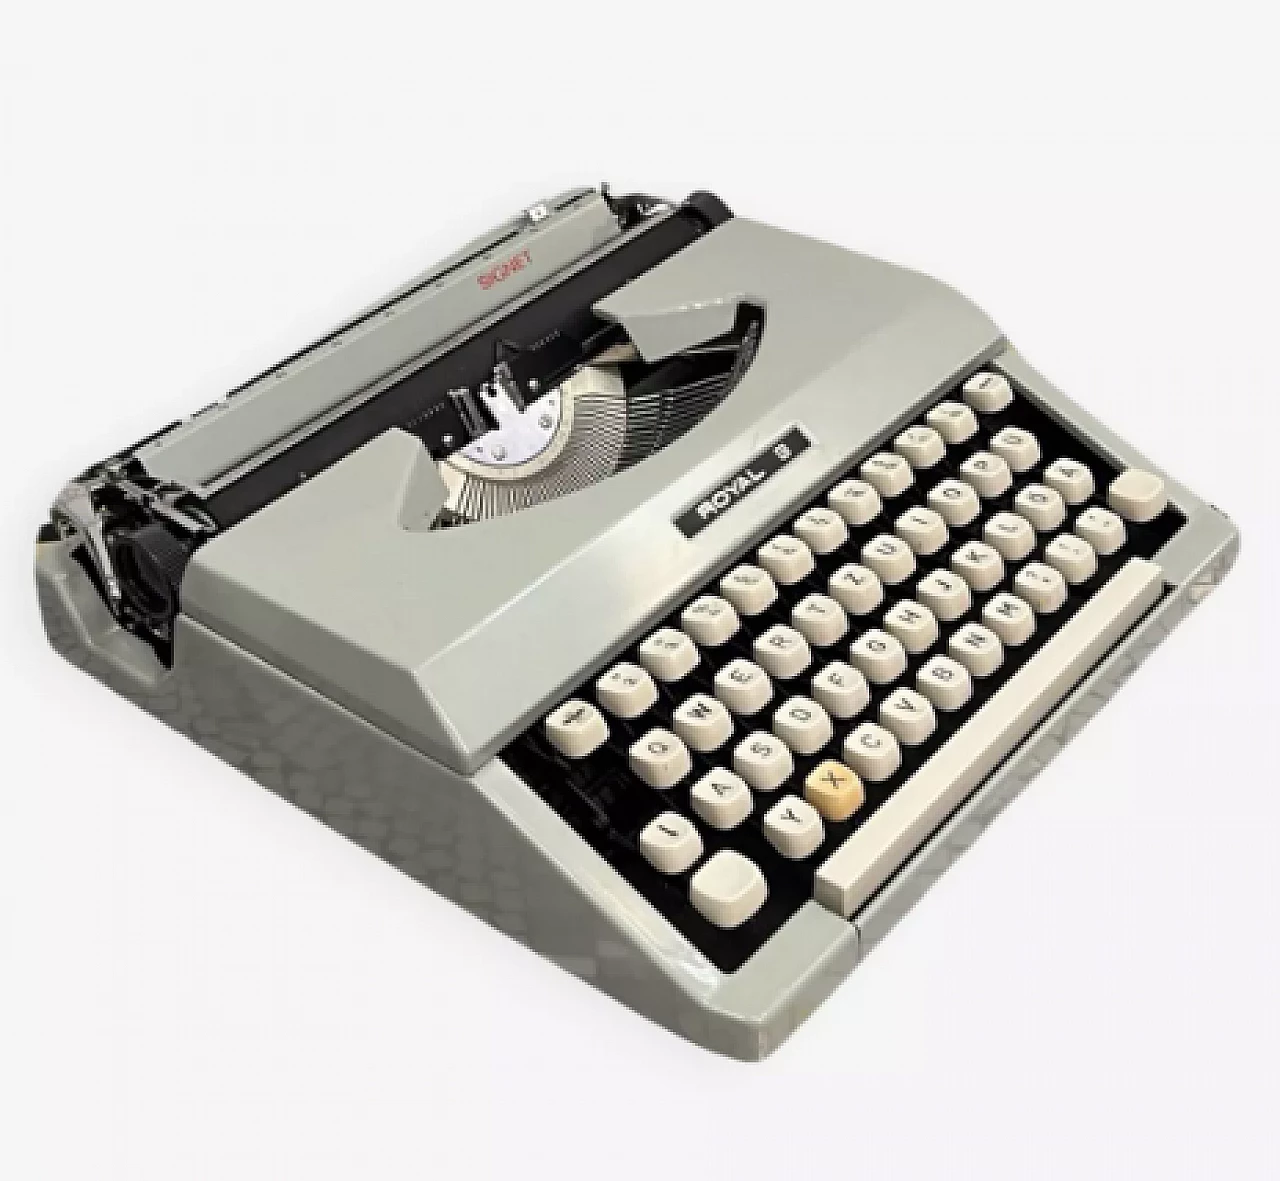 Japanese Royal Signet typewriter with case, 1970s 1